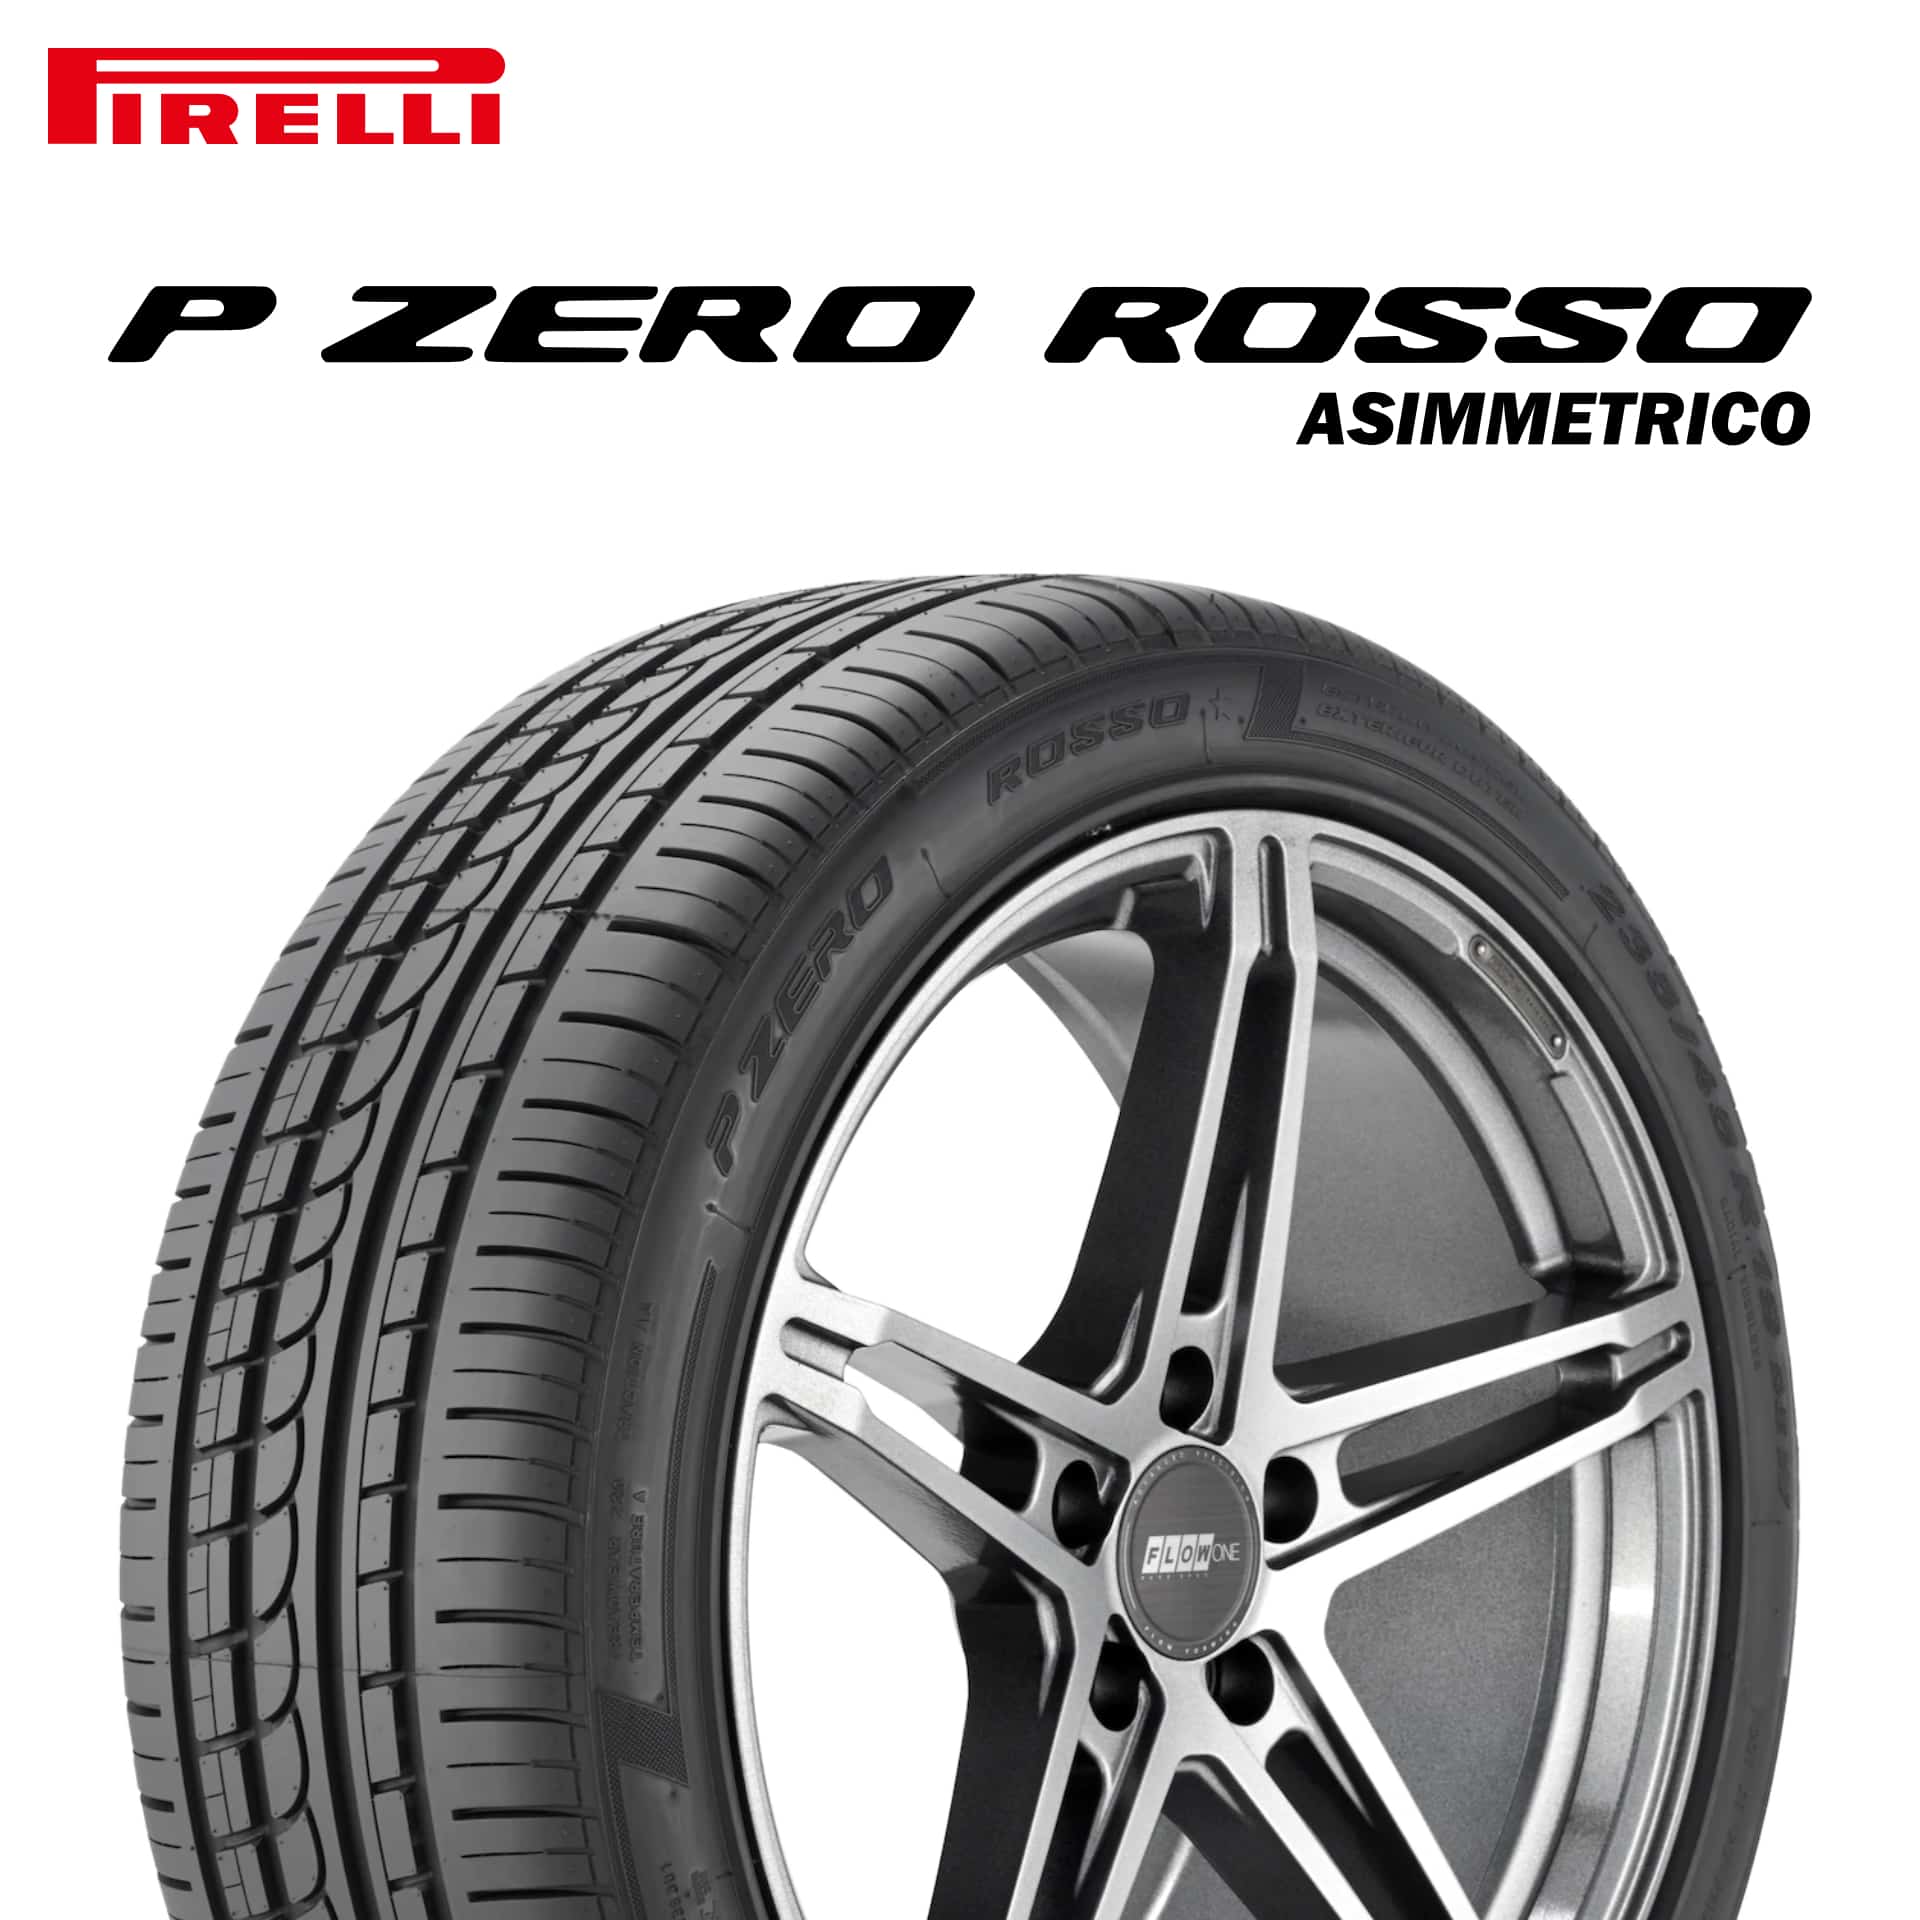 22年製 275/40R20 106Y XL N1 ピレリ P ZERO ROSSO ASIMMETRICO (ピーゼロ ロッソ アシンメトリコ) ポルシェ承認タイヤ カイエン (E1) 20インチ 新品